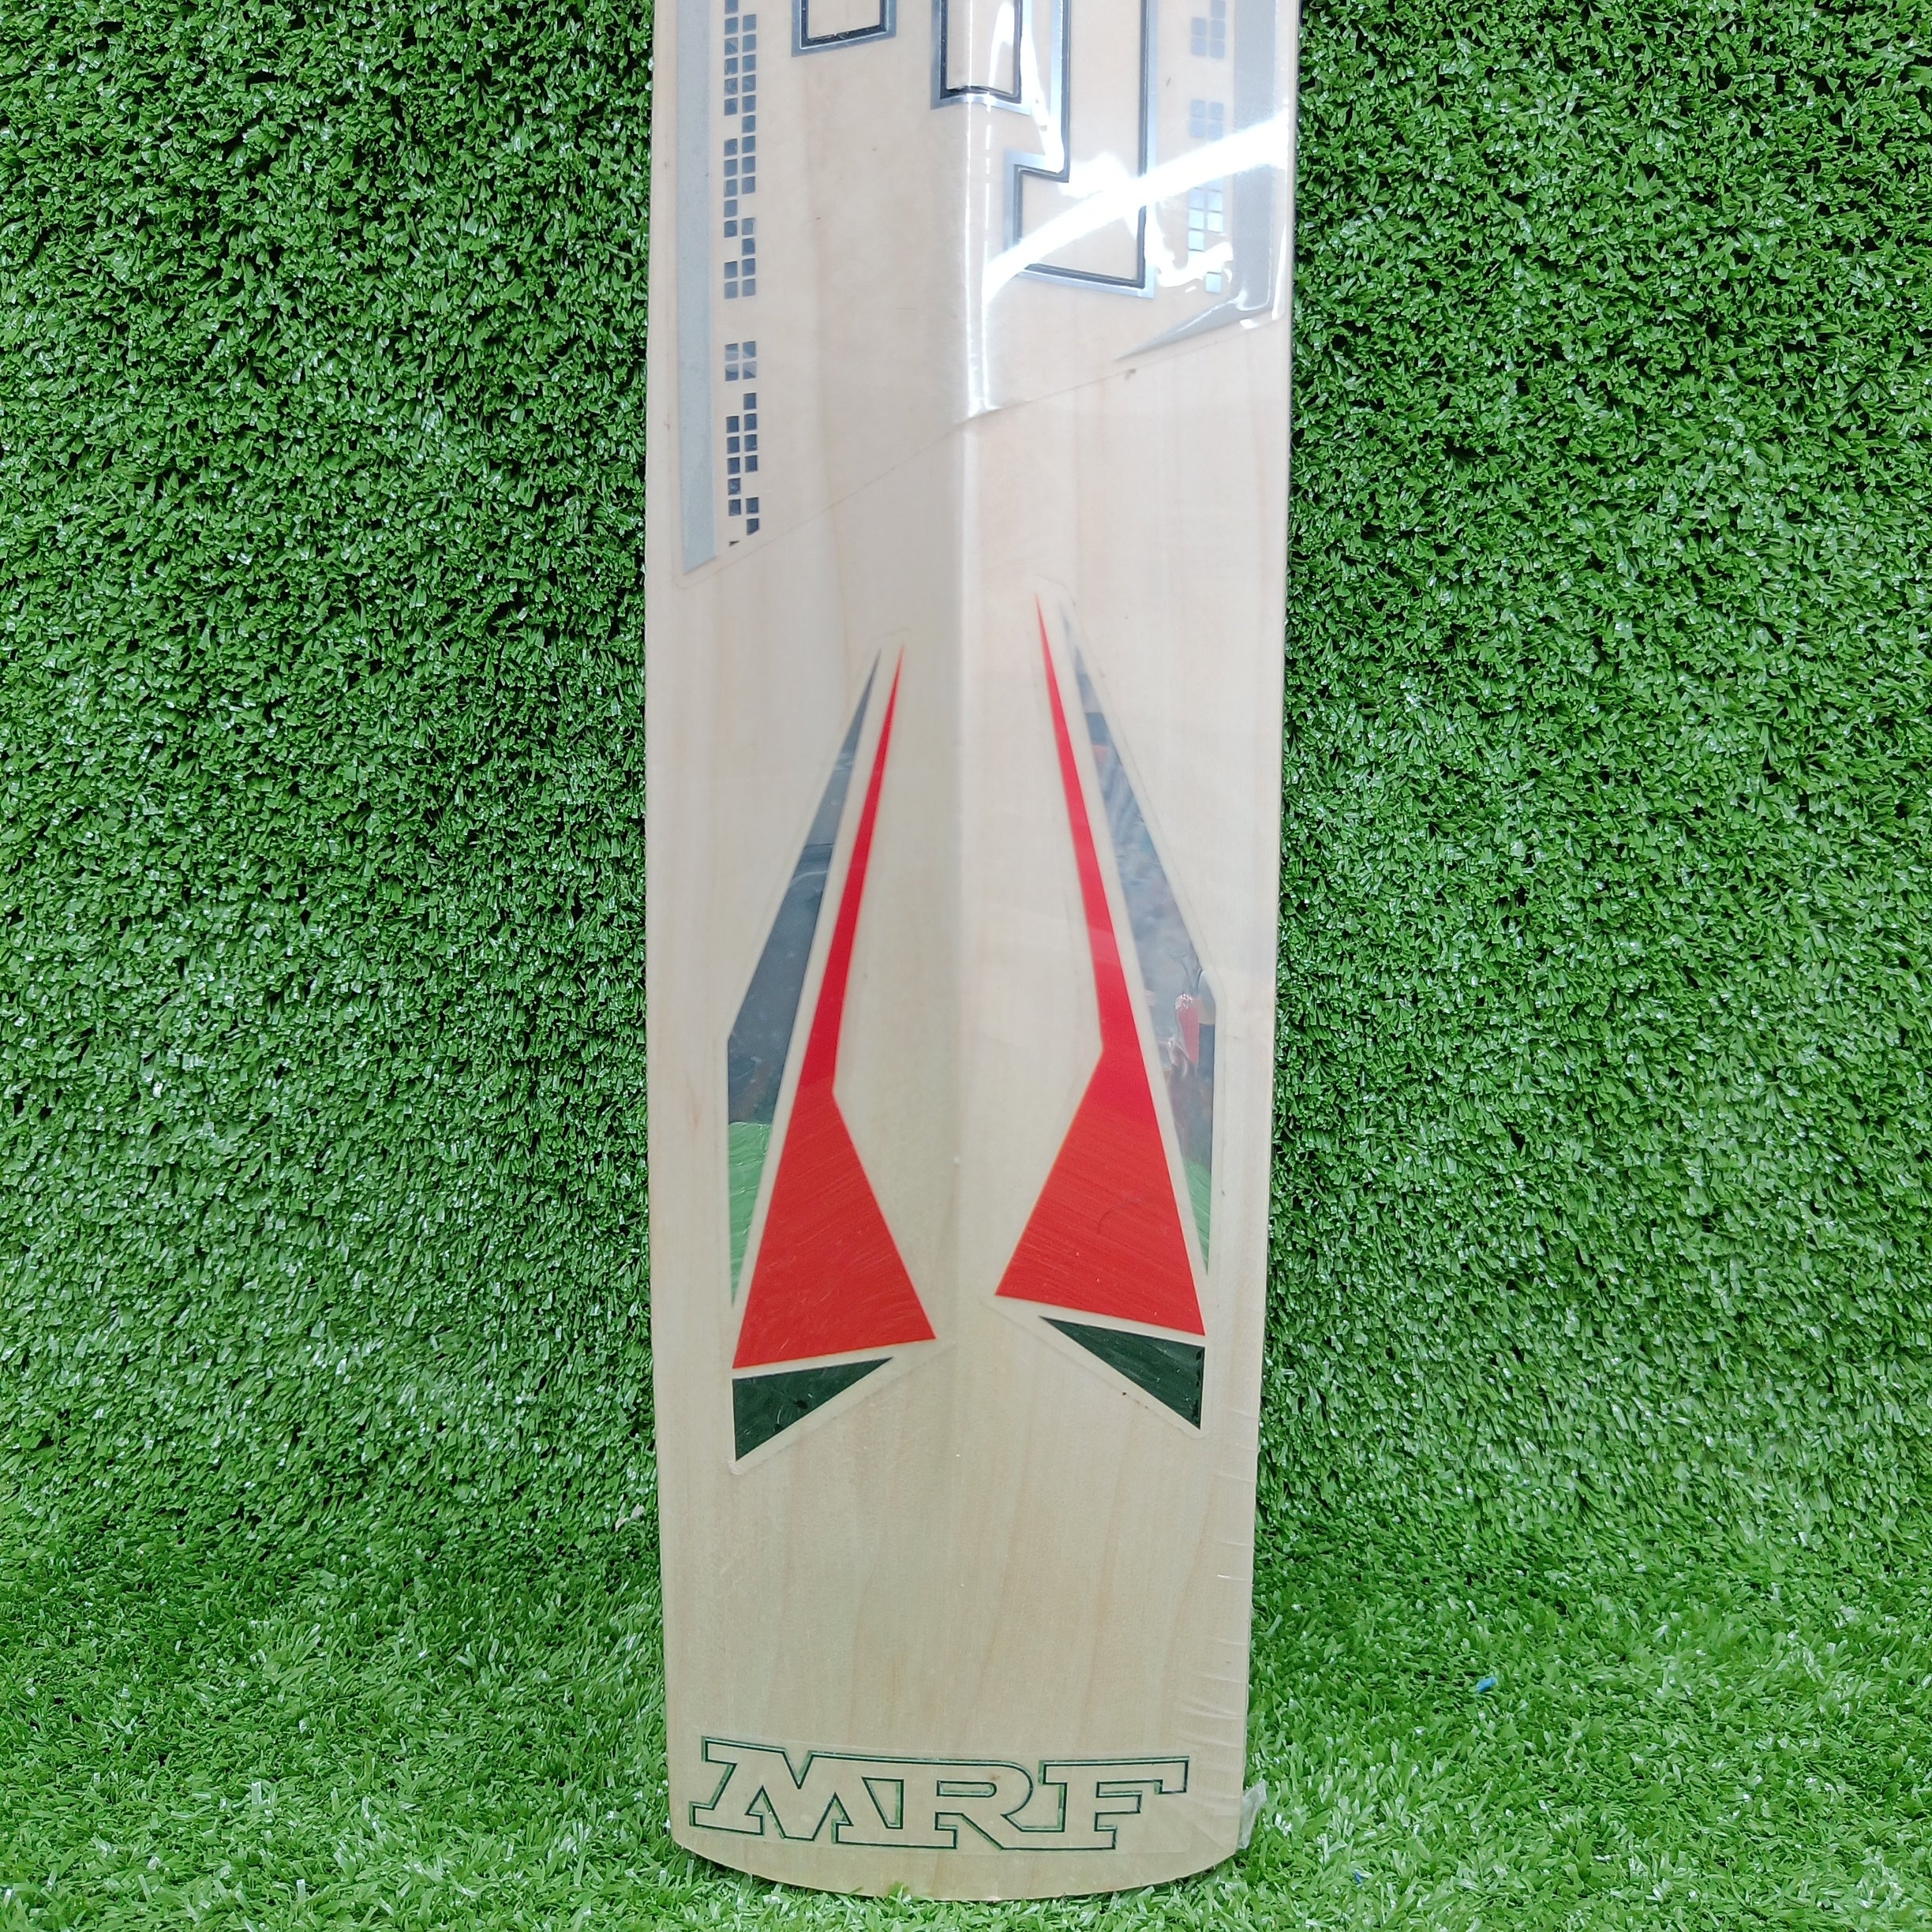 MRF Warrior Classic Cricket Bat